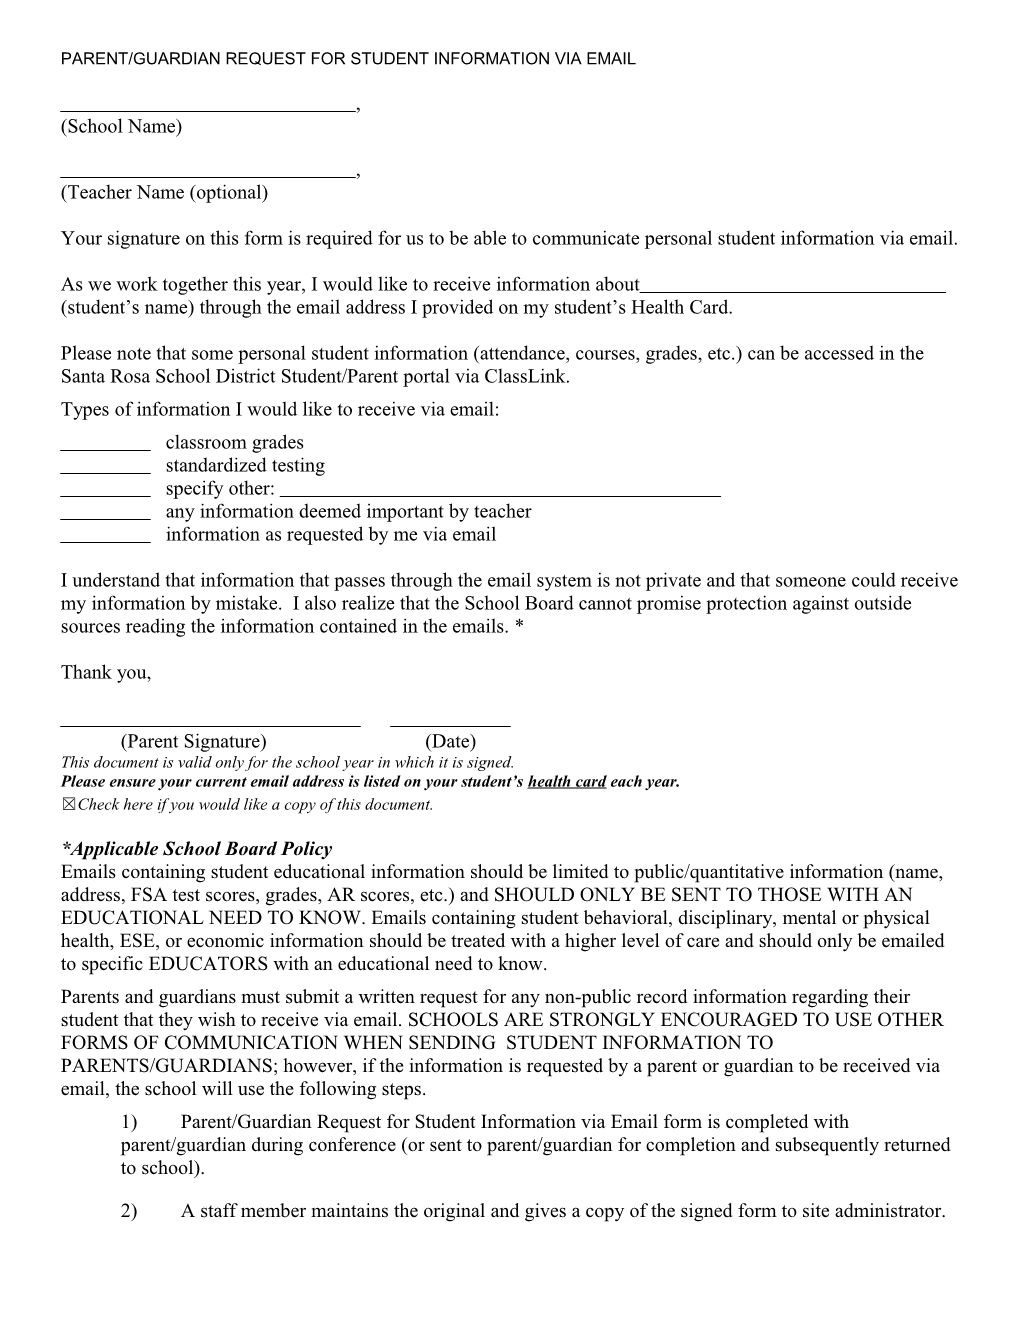 Parent/Guardian Information Via Email Request (63-11-54)